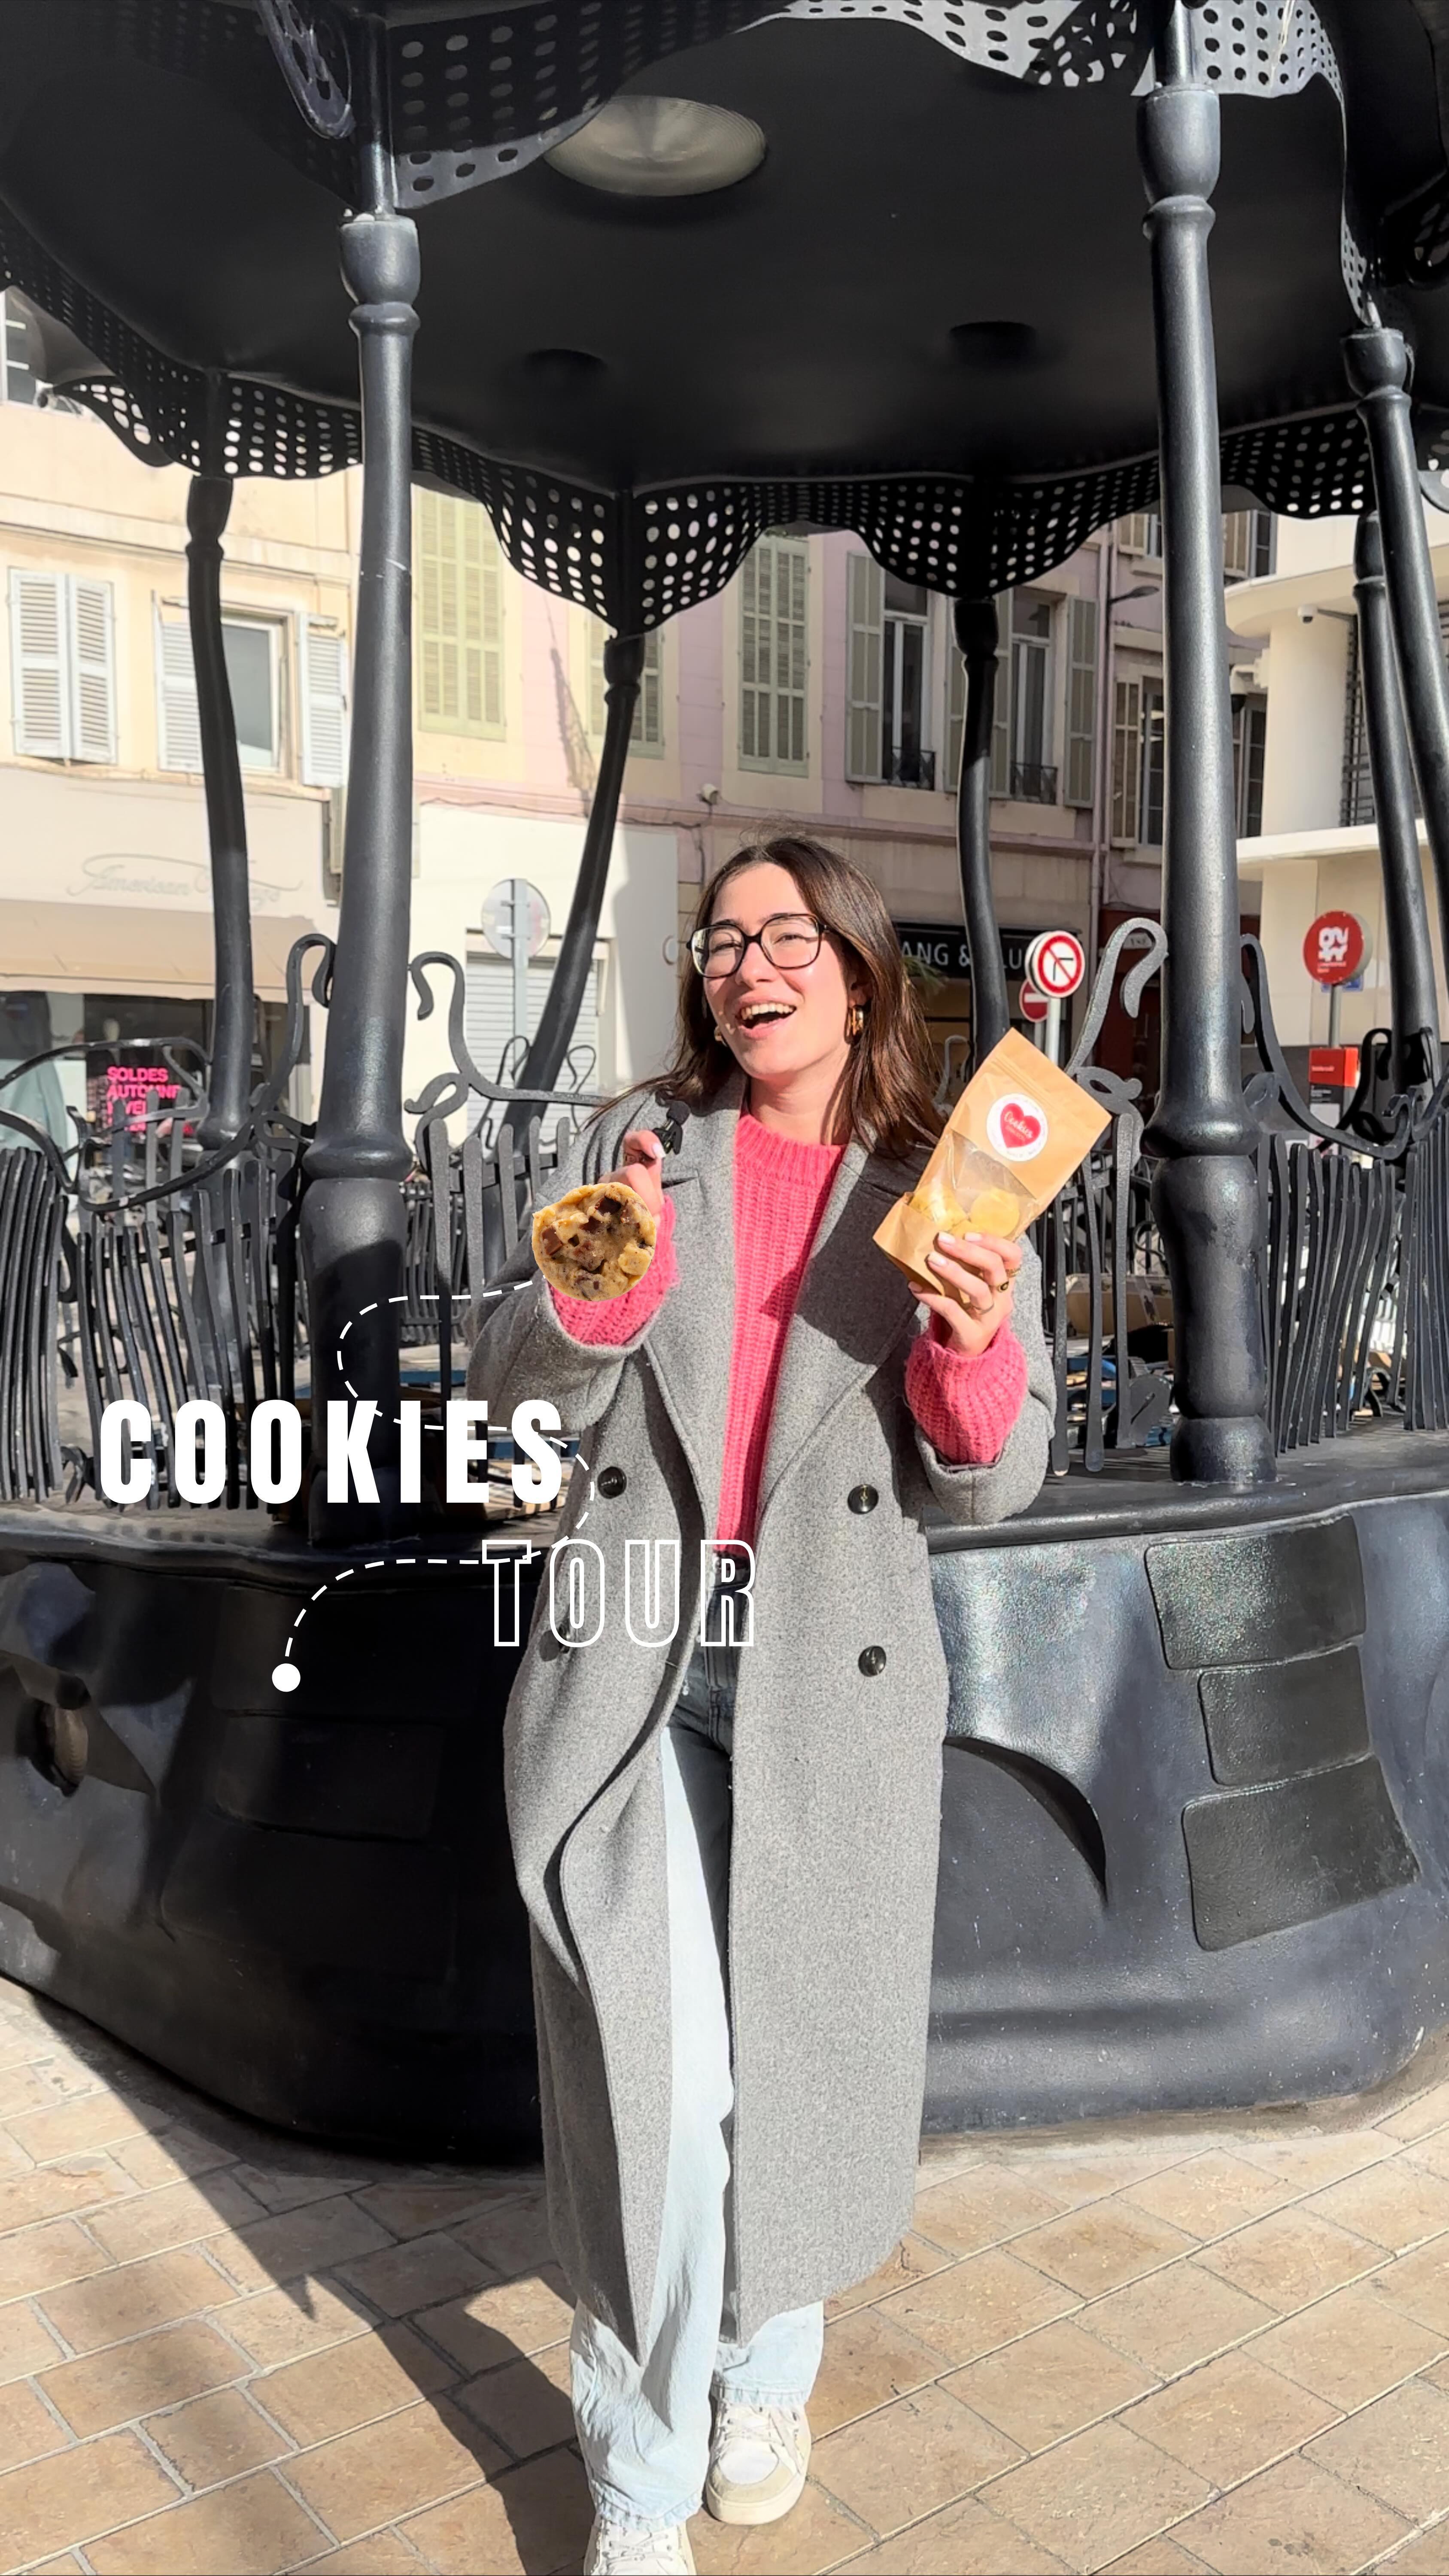 COOKIES TOUR 🍪

Et vous, quel cookie vous fait fondre de plaisir ? 
Dites-nous votre Cookies Giraudon préféré en commentaire ! 

🍪 Faits maison à Gémenos (13)
📍Disponibles dans plusieurs points de vente
💌 Plus d’infos sur notre site web (lien dans notre bio)

#CookiesGiraudon #gourmand #cookiesgiraudontour #marseille #CookiesFaitsMaison  #homemadewithlove #CookiesArtisanaux #FaitAvecAmour #Gémenos #RecetteAuthentique #CuisineArtisanale #marseille #MadeInFrance #CookiesAddict